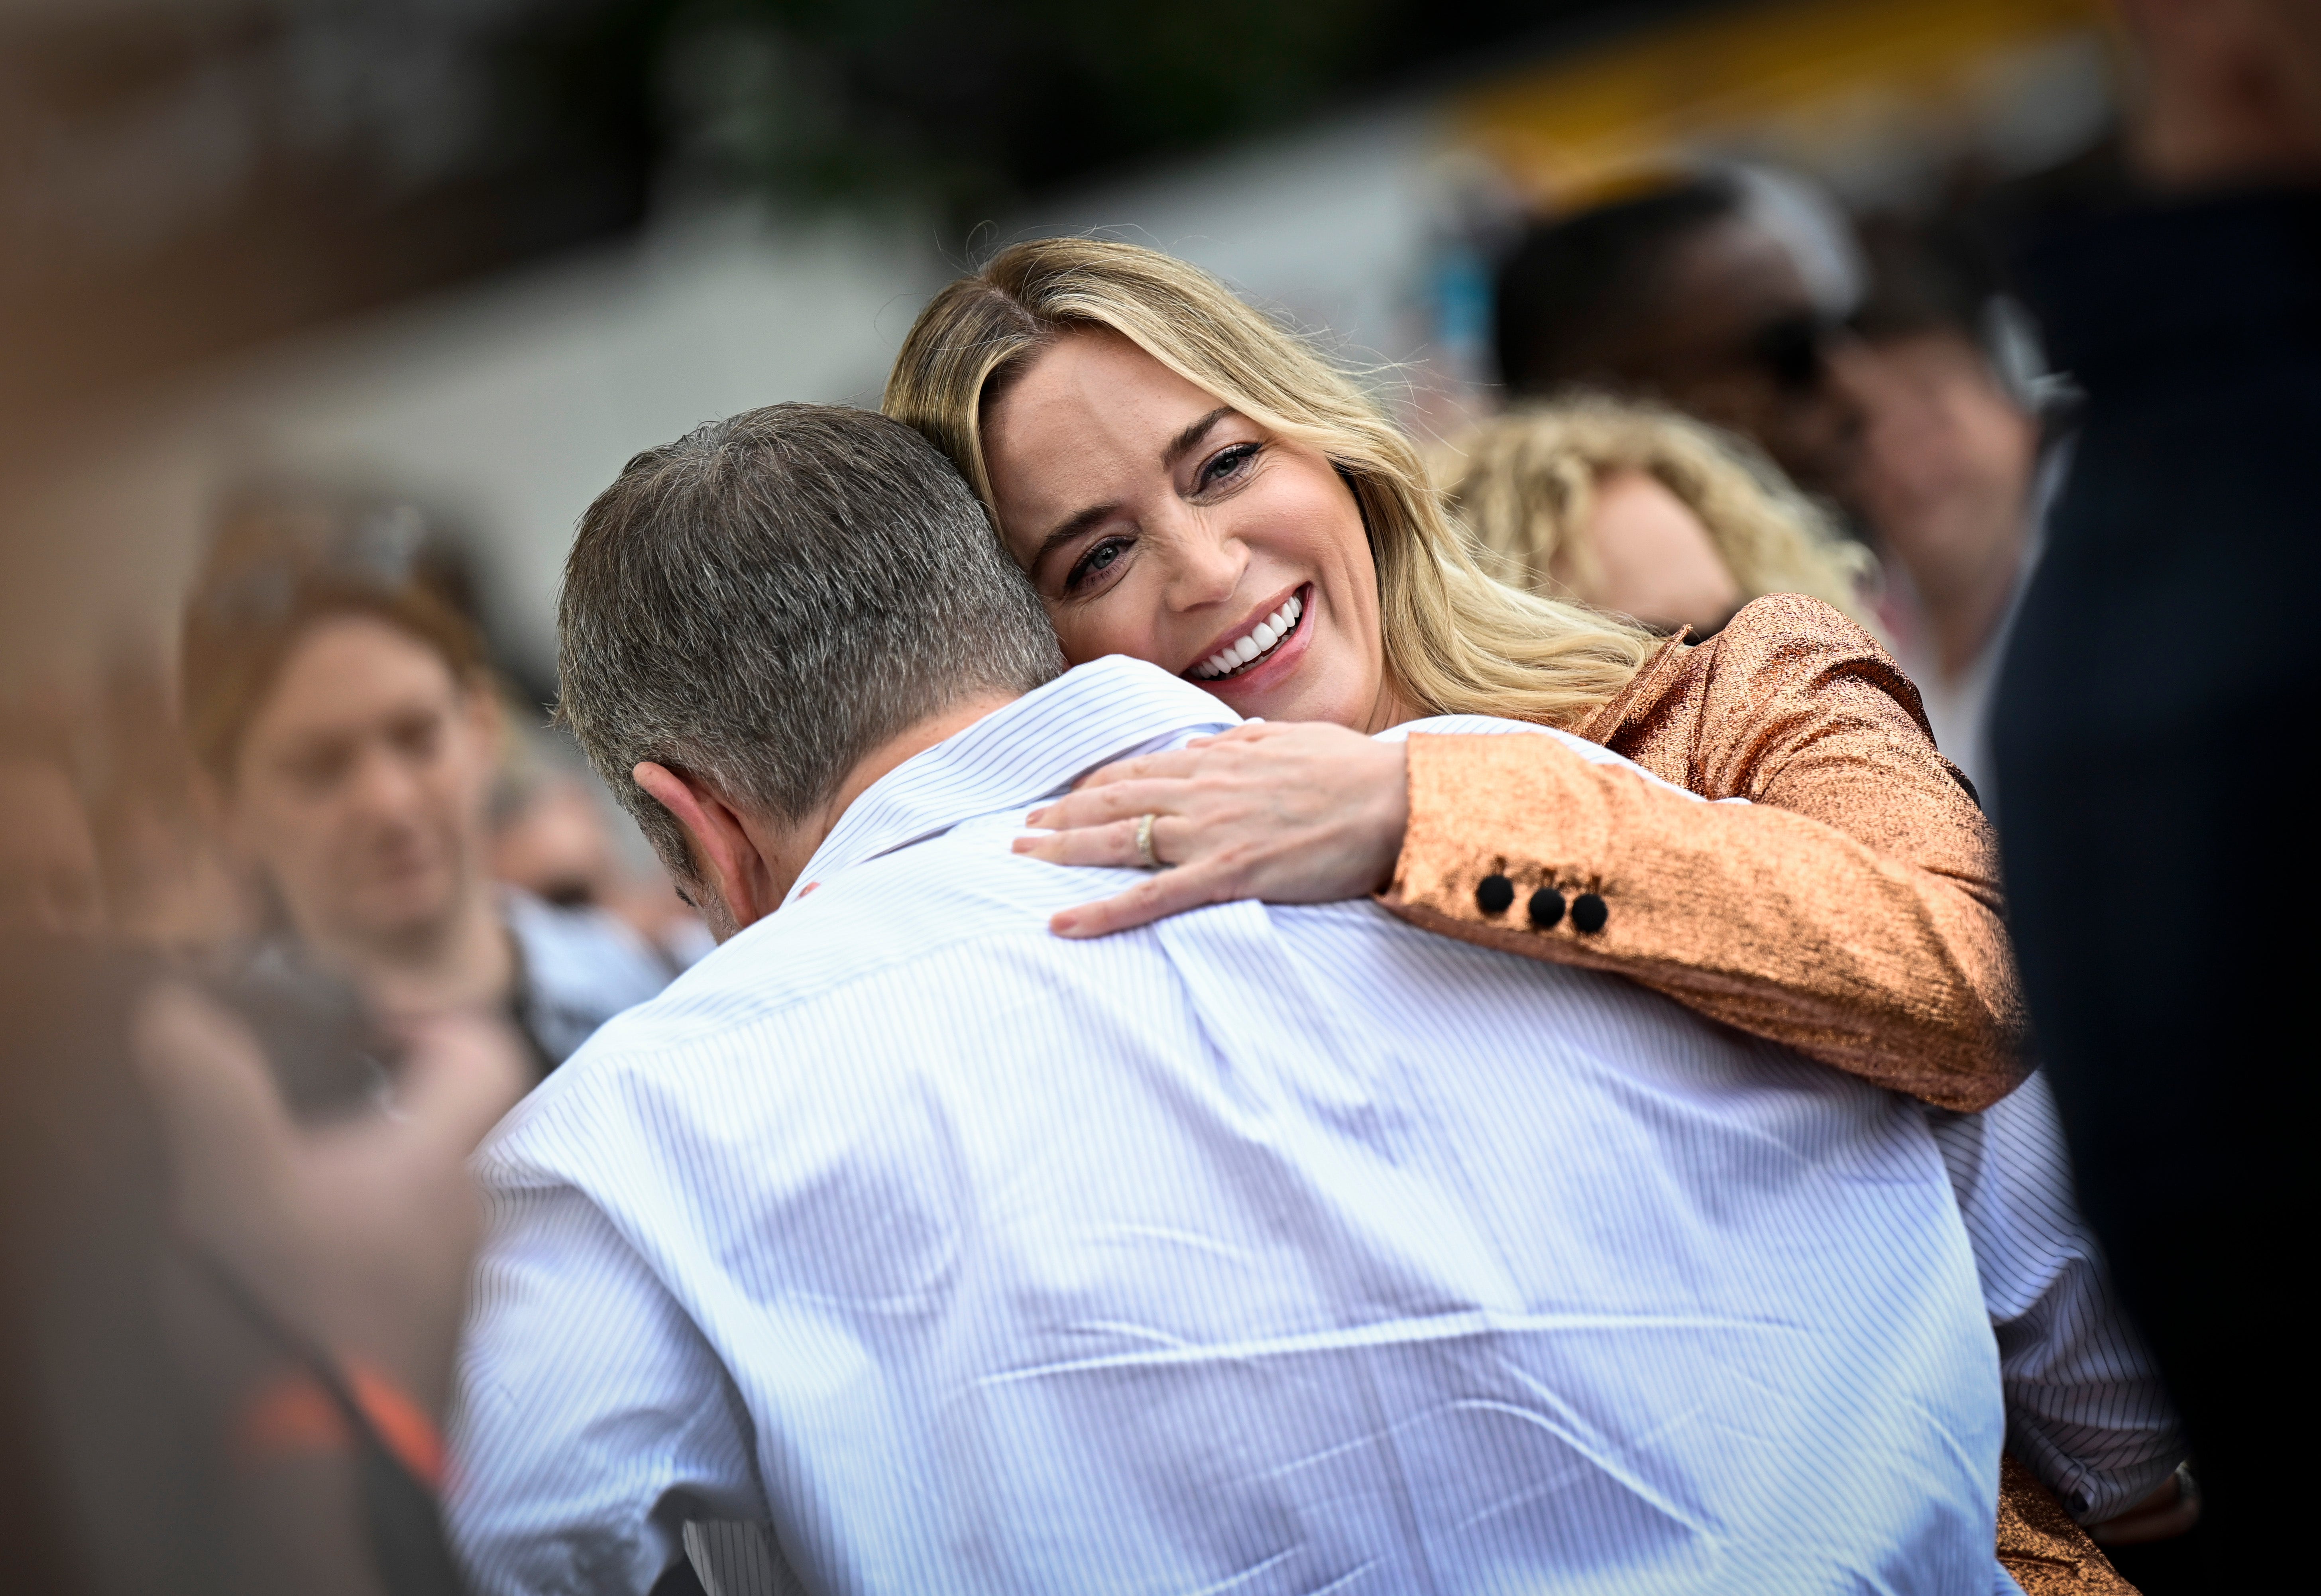 Emily Blunt hugs Matt Damon at the "Oppenheimer" photocall